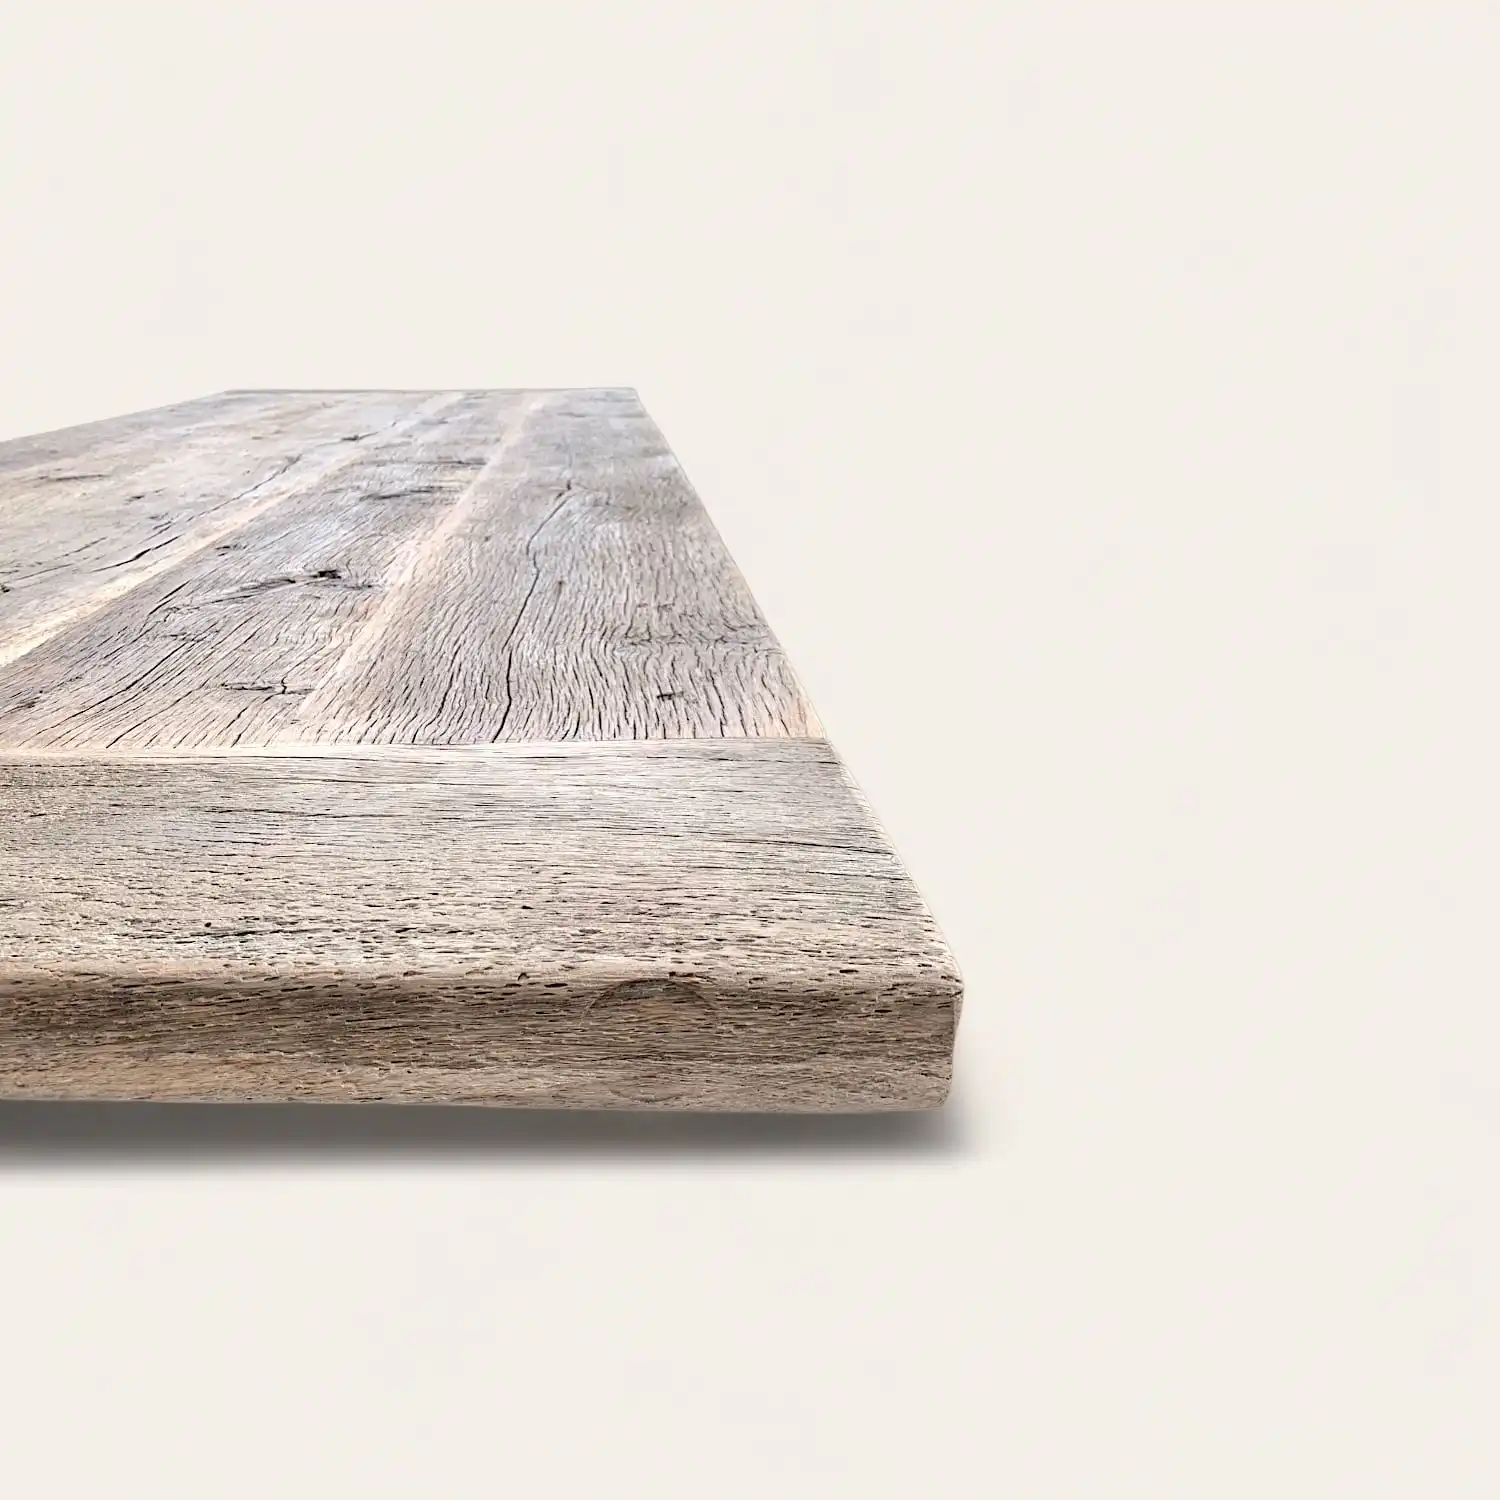  Détail du bord d'une table rustique en bois ancien, montrant la texture naturelle et les nuances du bois avec un effet de perspective, parfait pour un intérieur authentique et chaleureux. 